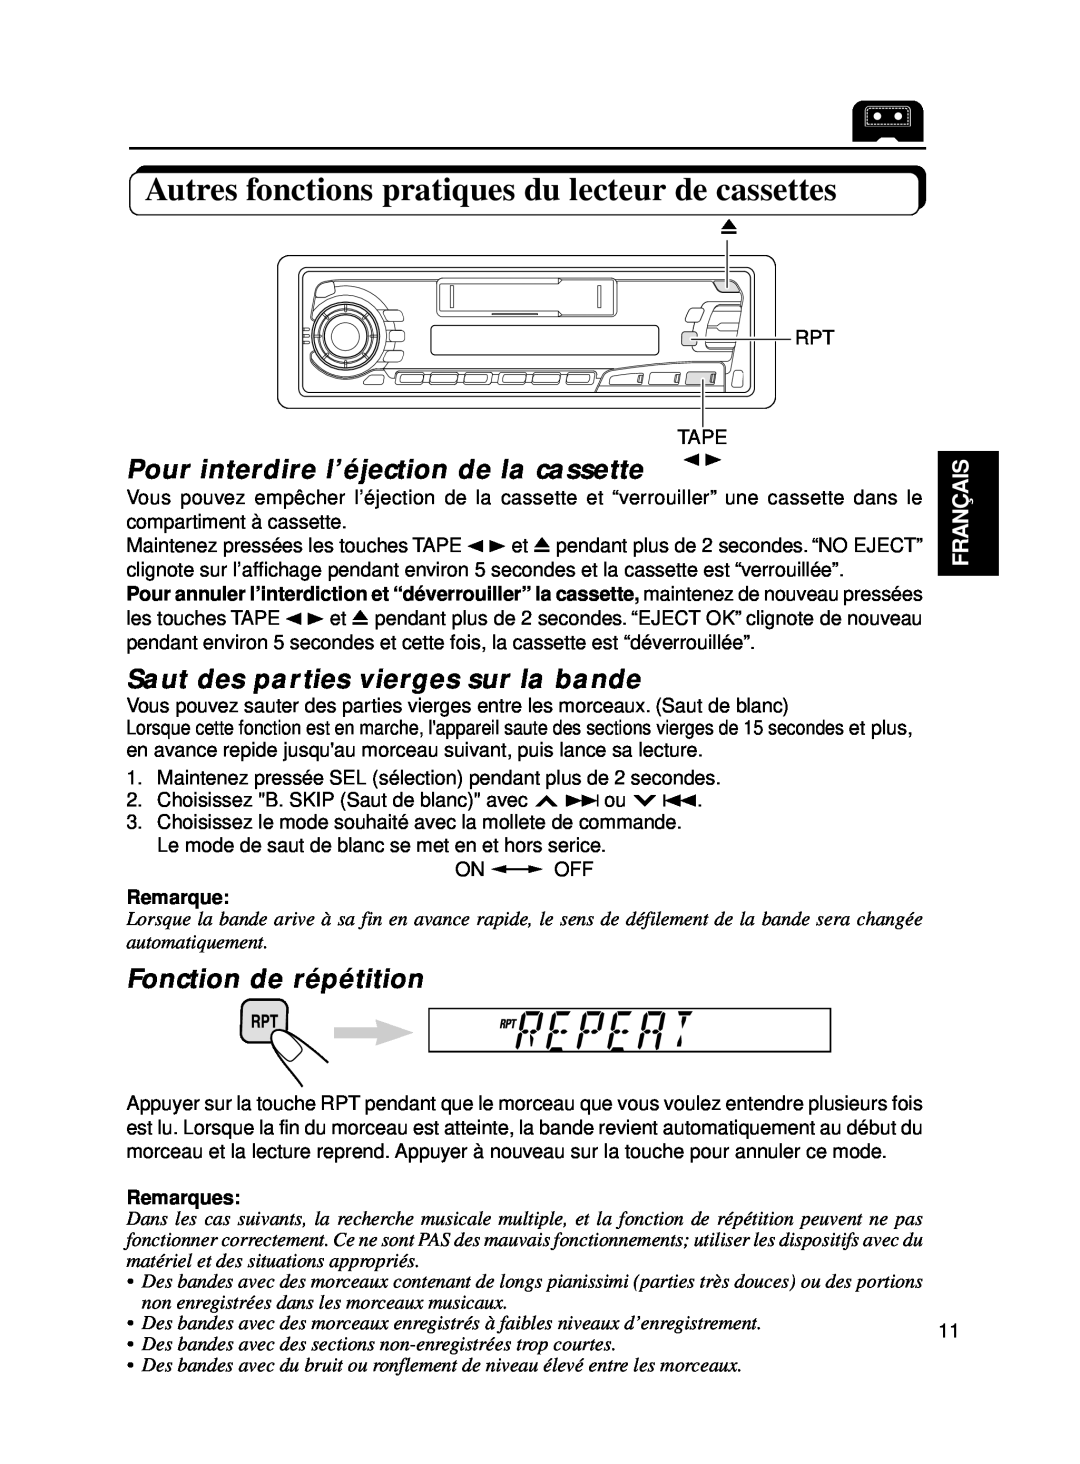 JVC KS-FX250 manual Pour interdire l’éjection de la cassette, Saut des parties vierges sur la bande, Fonction de répétition 